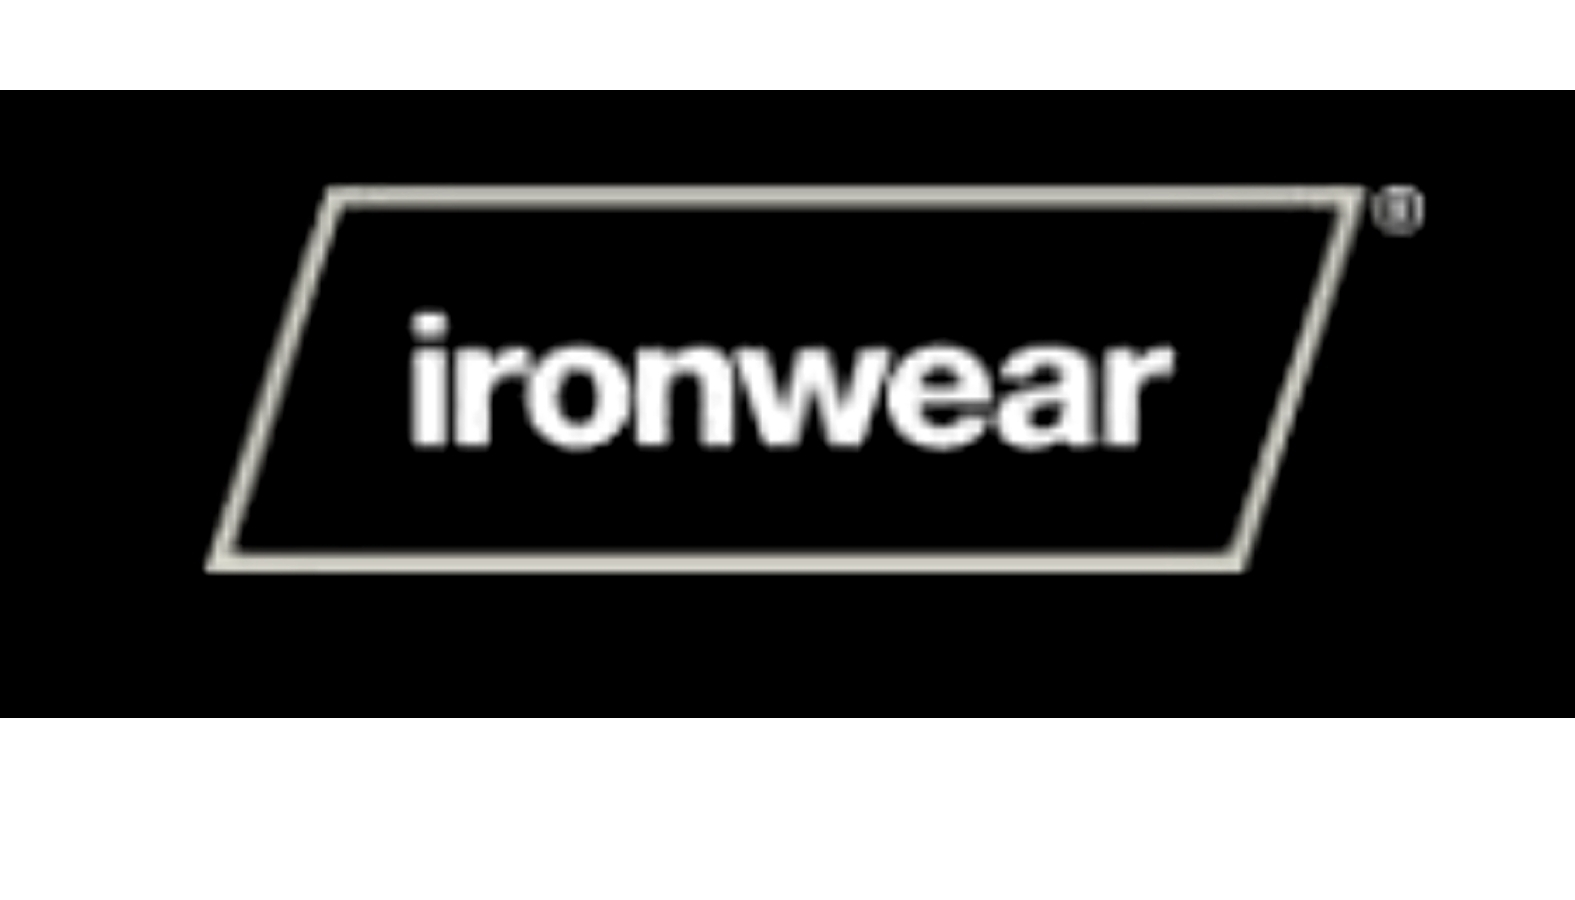 ironwear